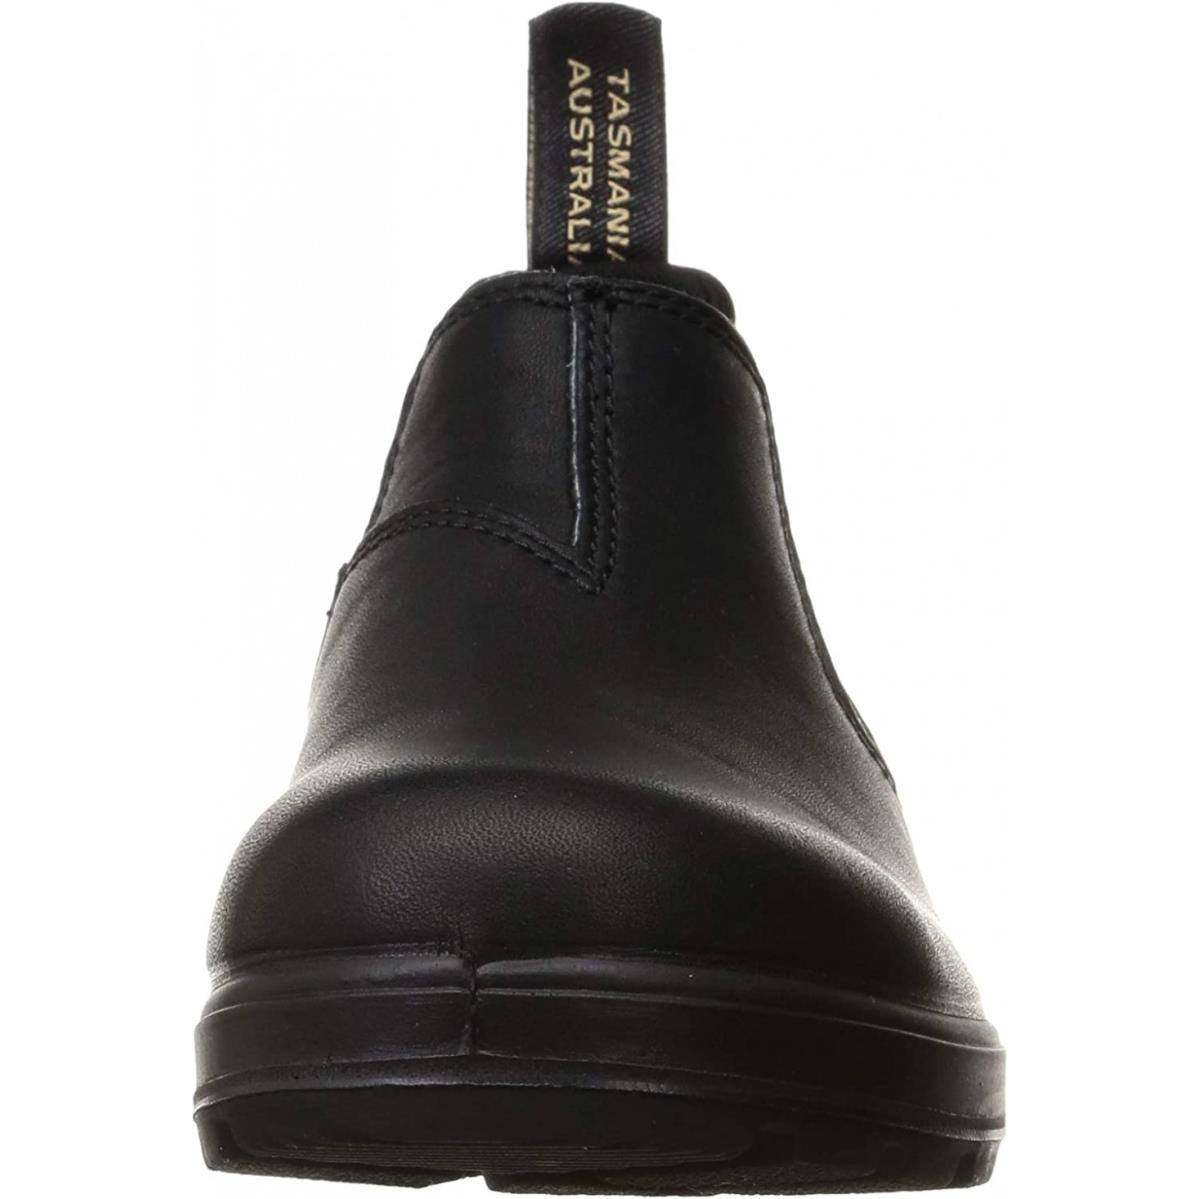 Blundstone Low-cut Shoe Style 2038